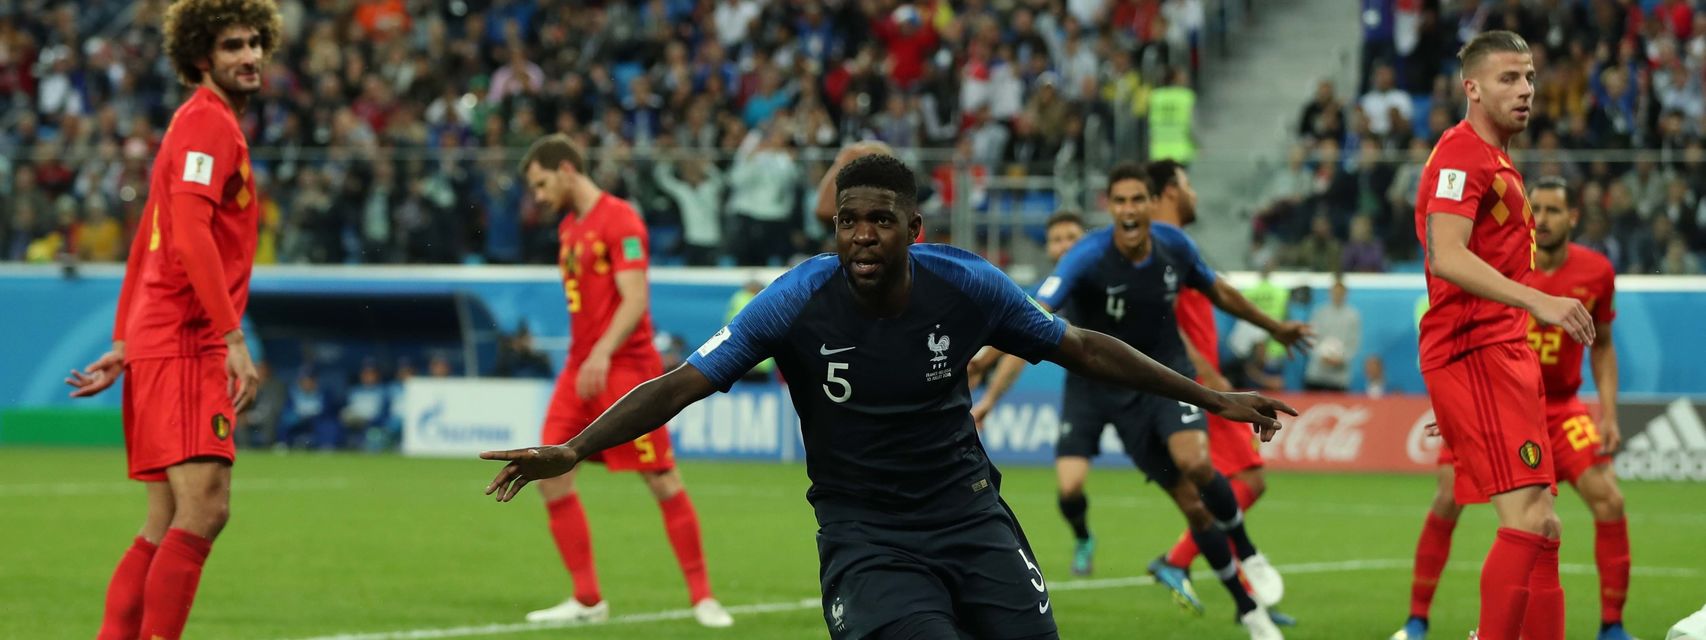  Francia vence 1-0 a Bélgica y se cuela a la final del Mundial de Futbol